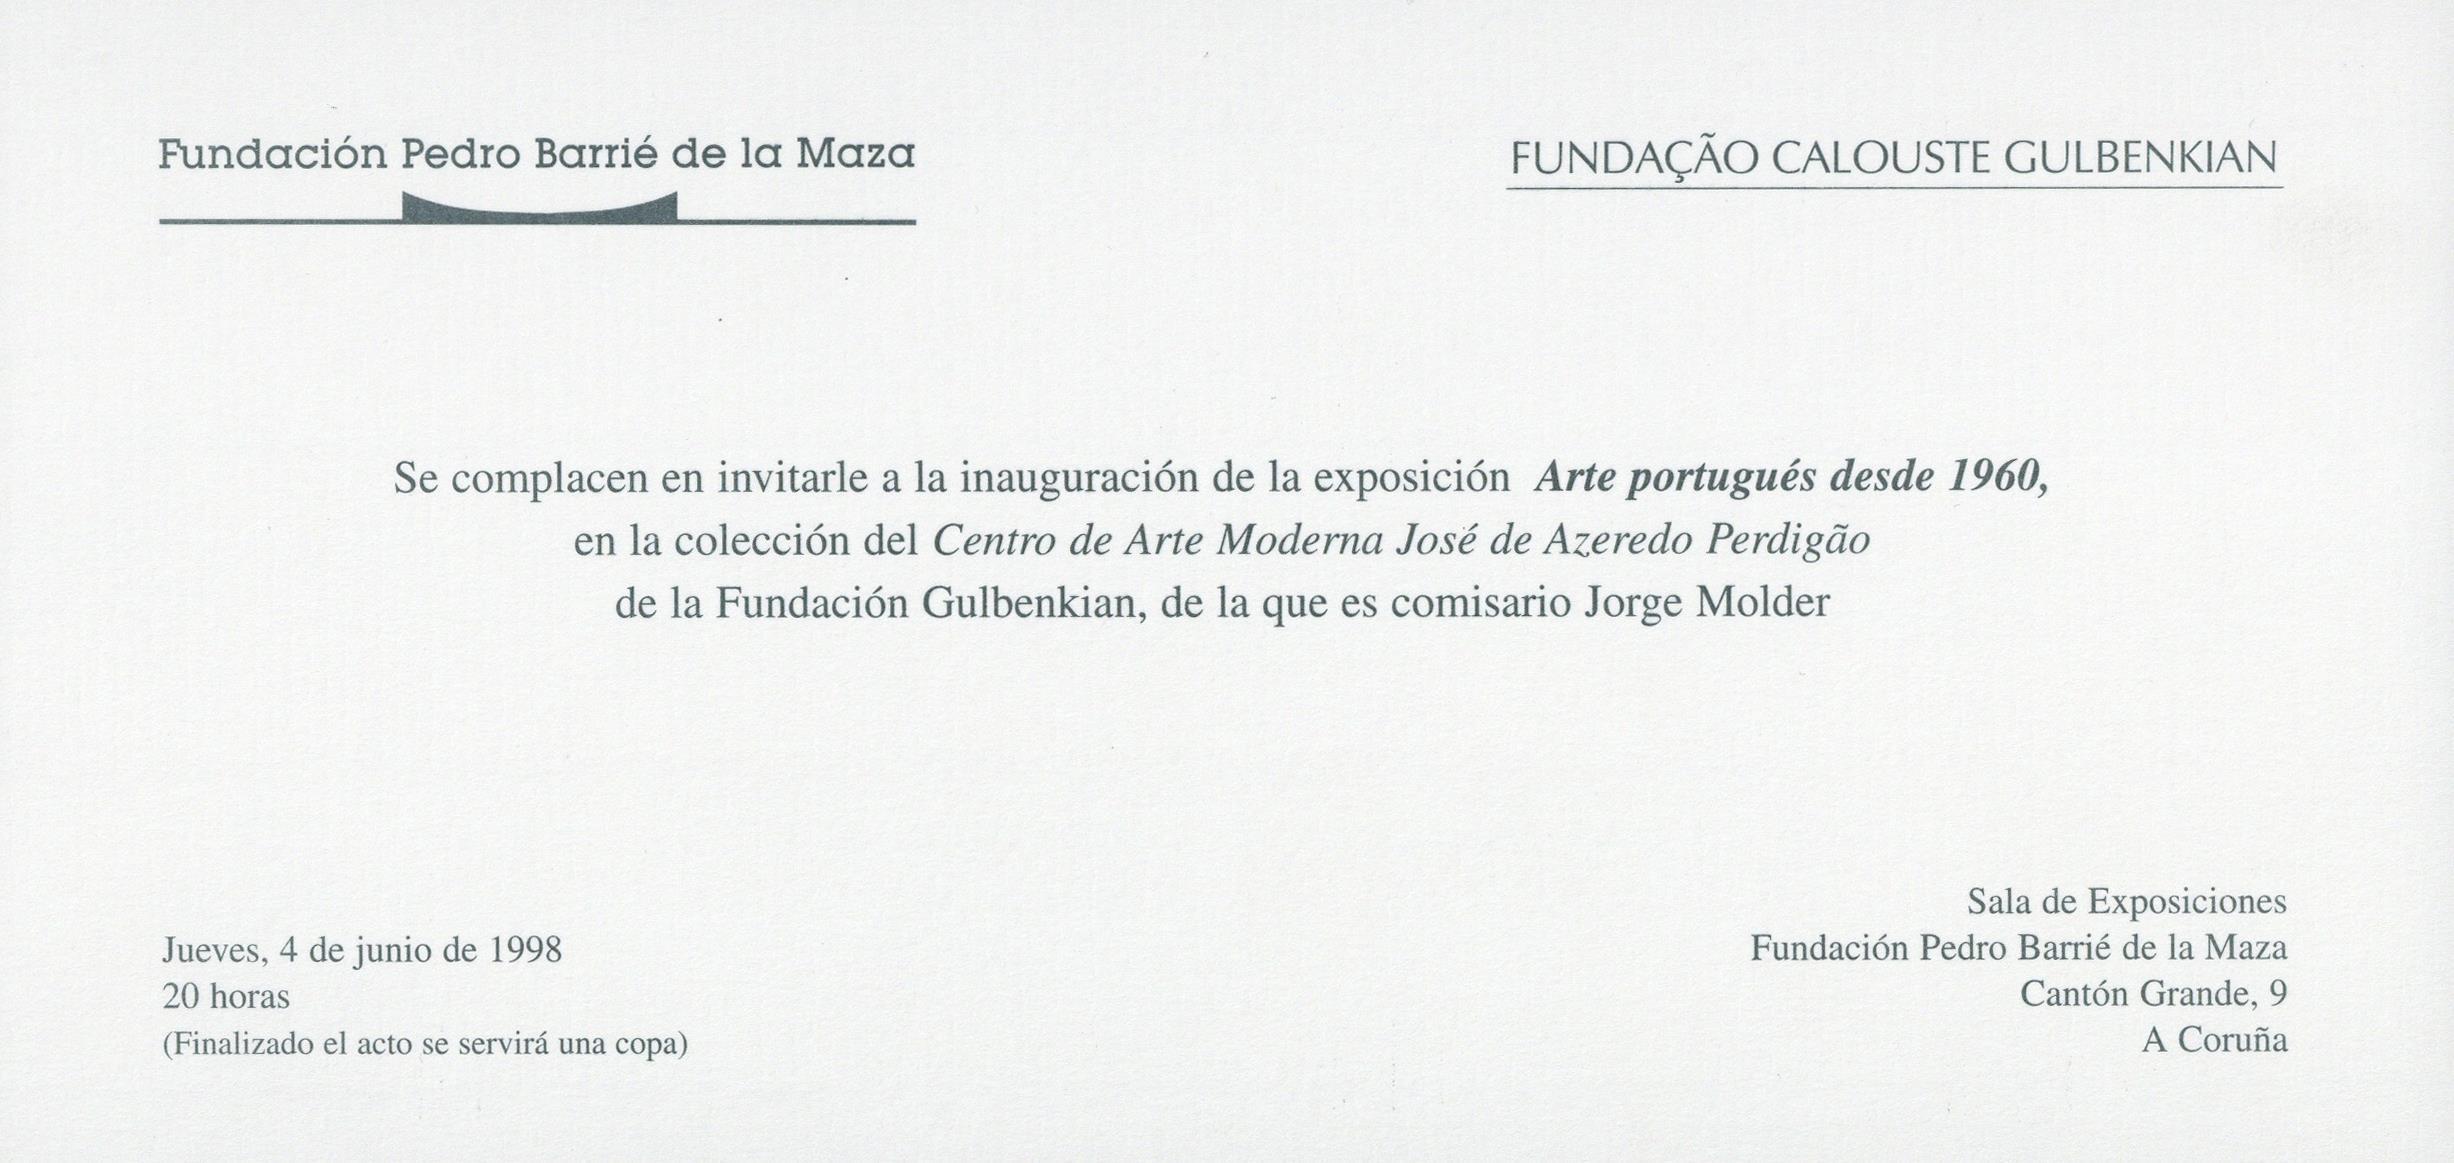 Arte Portugués desde 1960 en la Colección del Centro de Arte Moderna José de Azeredo Perdigão de la Fundação Calouste Gulbenkian